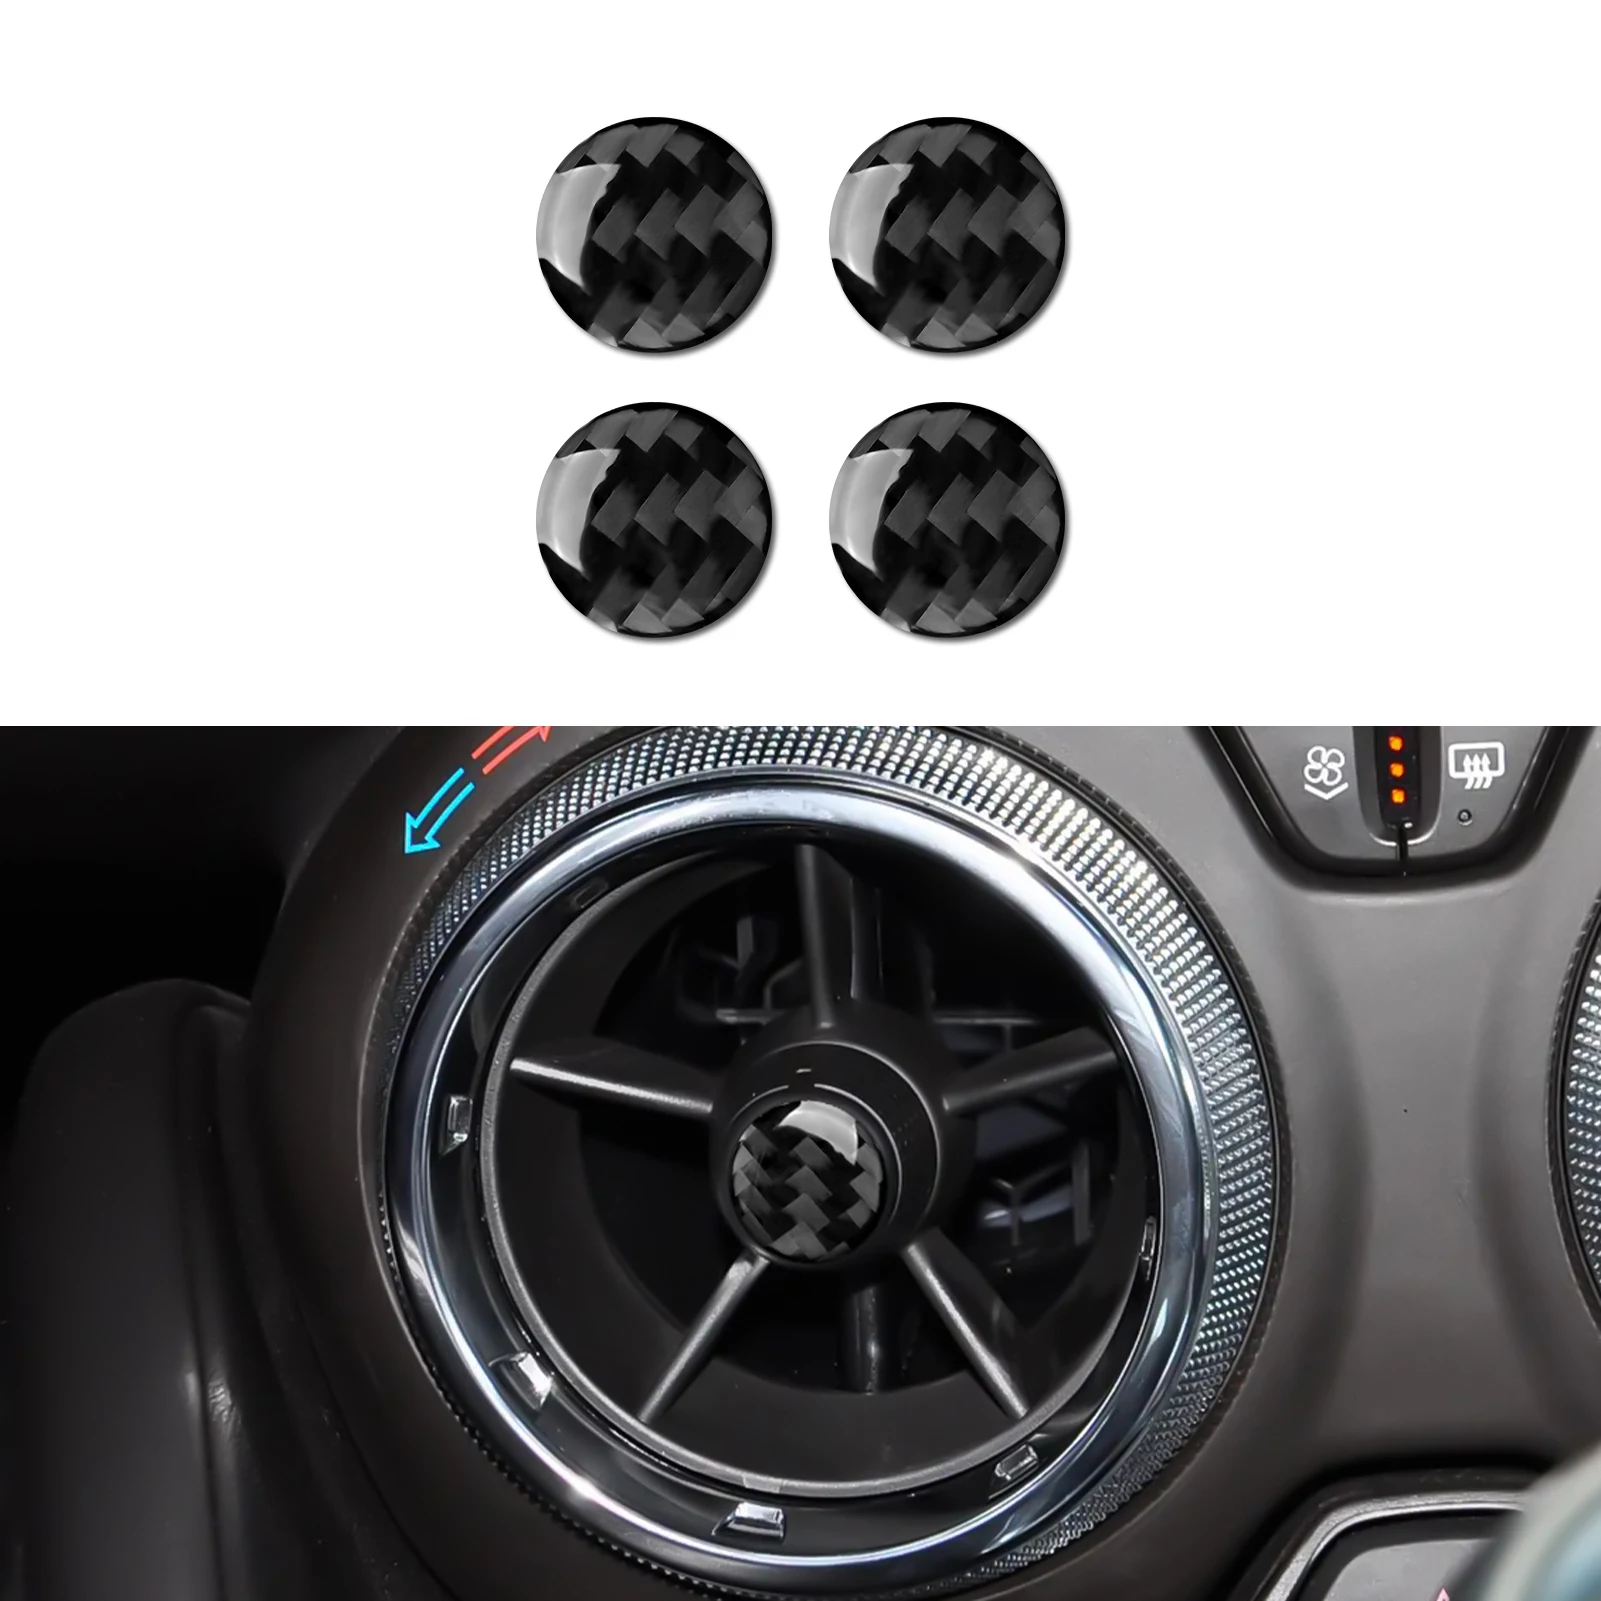 

Car Center Air Vent Sticker Decal Carbon Fiber Trim Cover for Chevrolet Camaro 2016 2017 2018 2019 2020 2021 2022 Accessories